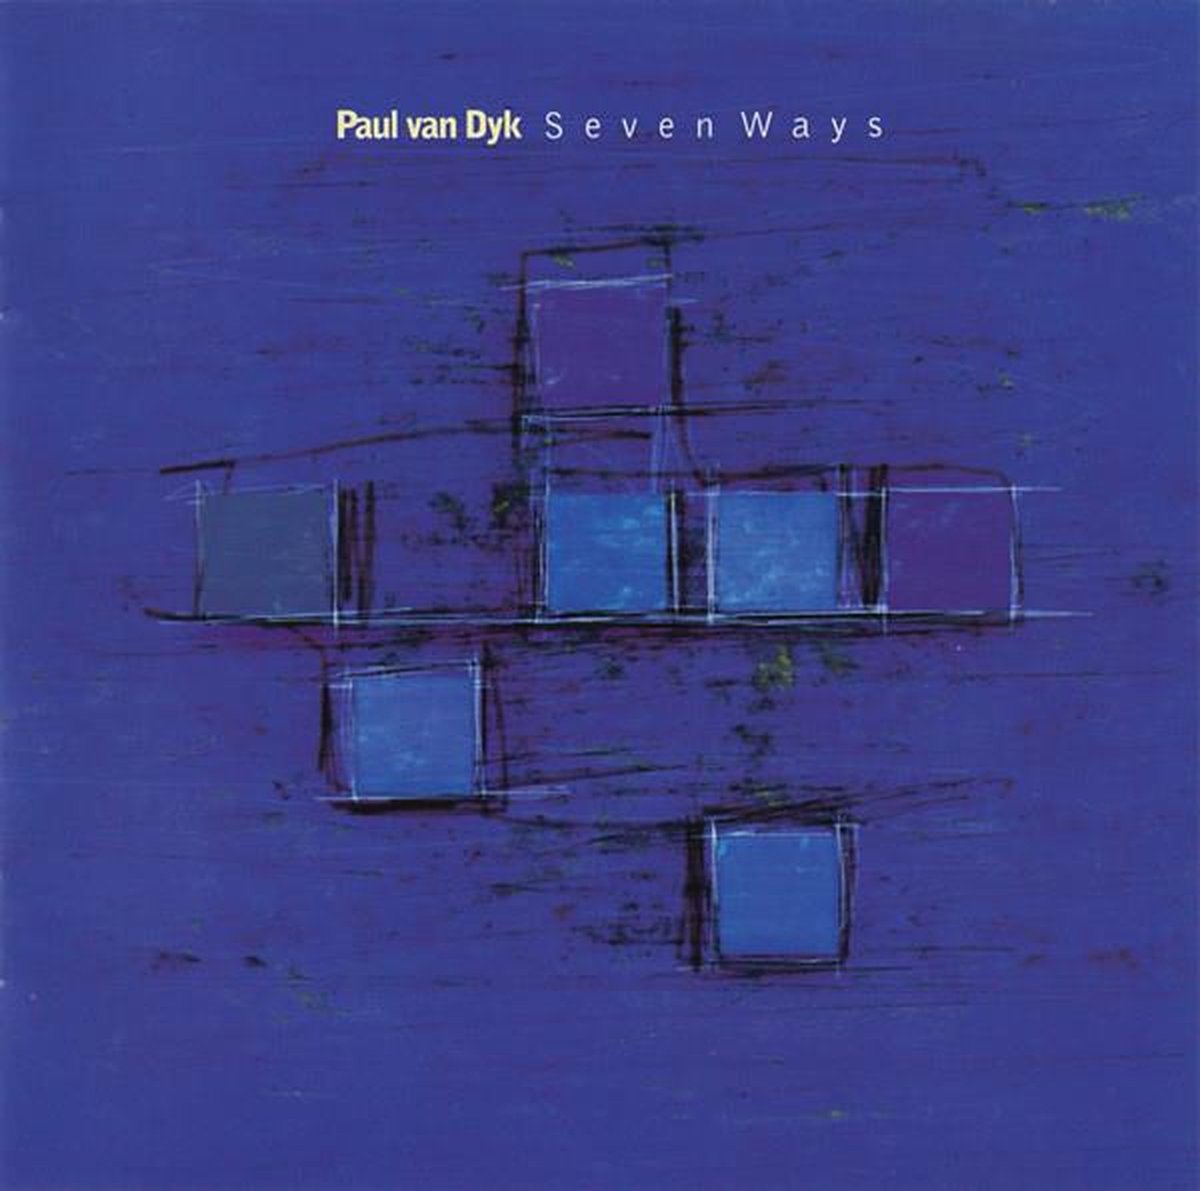 Paul Van Dyk - Seven Ways - Paul van Dyk